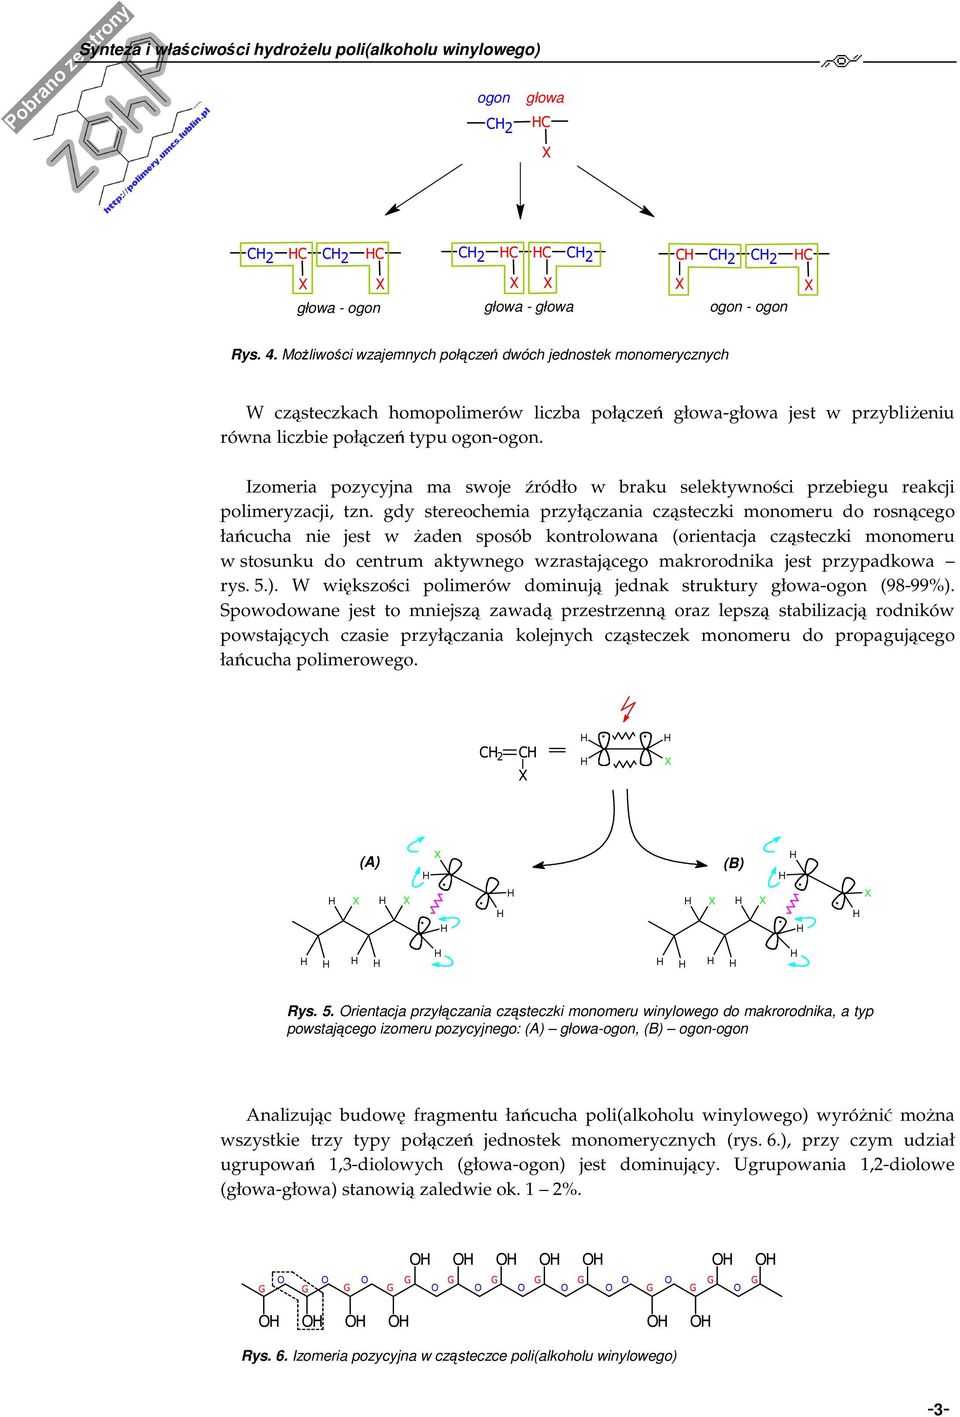 Izomeria pozycyja ma swoje źródło w braku selektywości przebiegu reakcji polimeryzacji, tz.